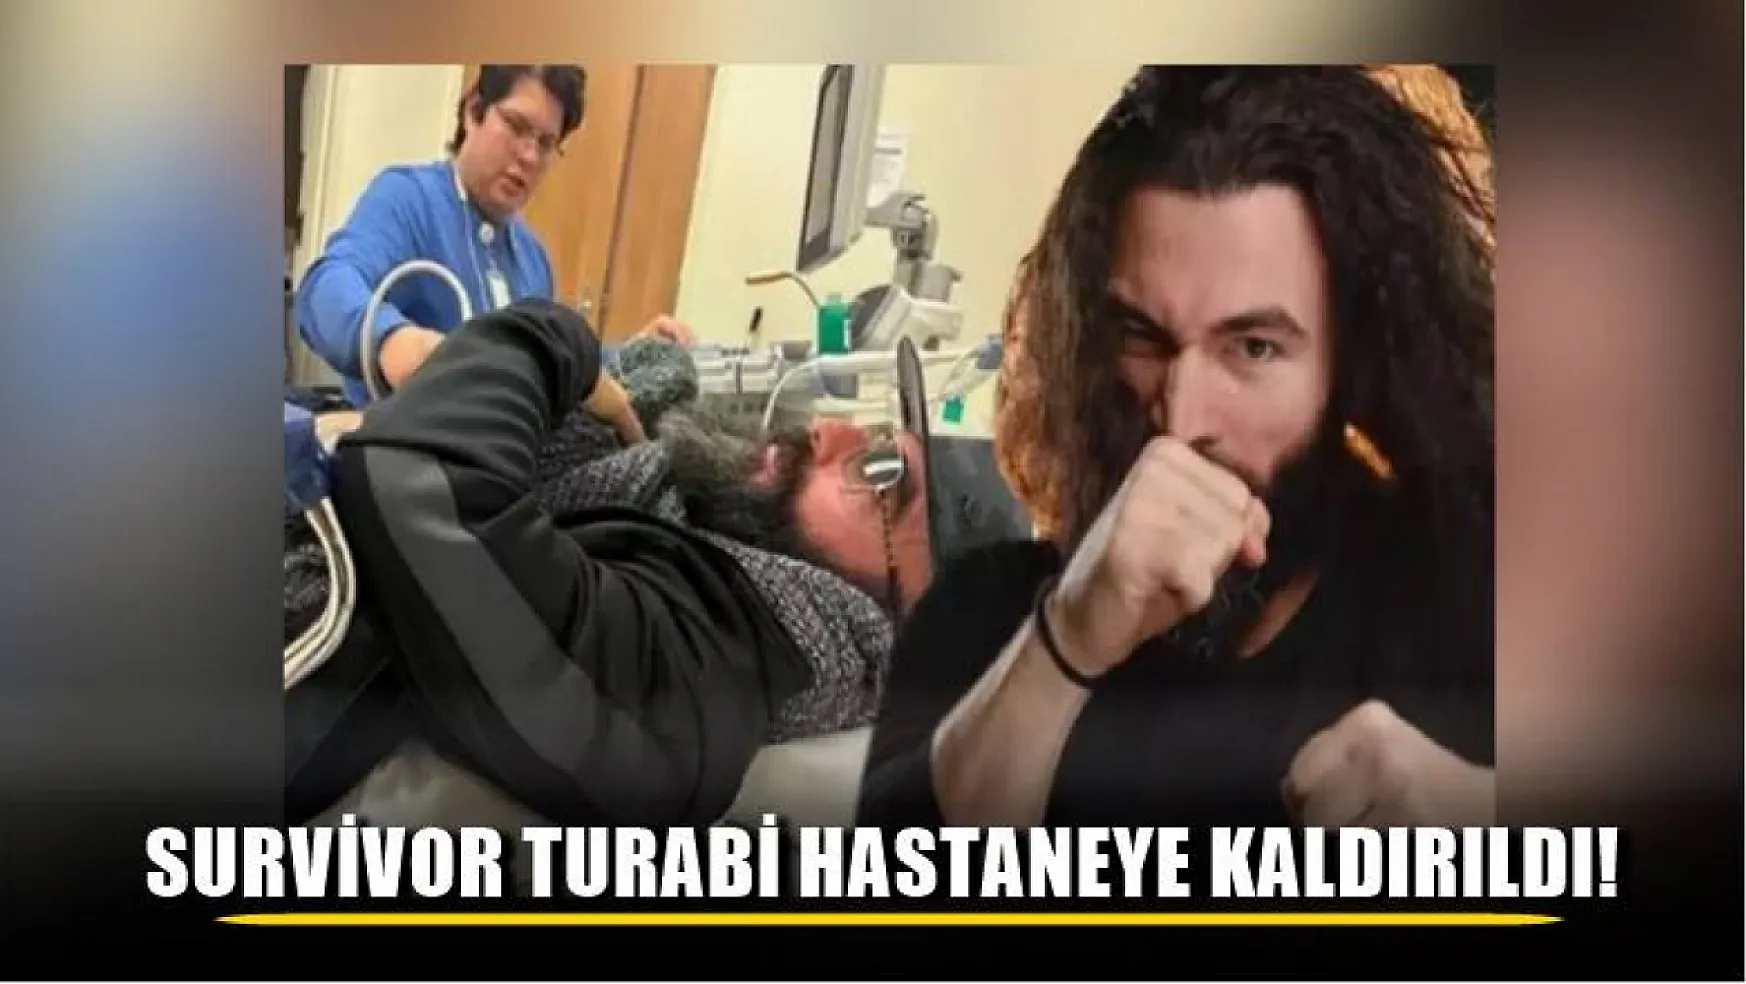 Survivor Turabi hastaneye kaldırıldı!